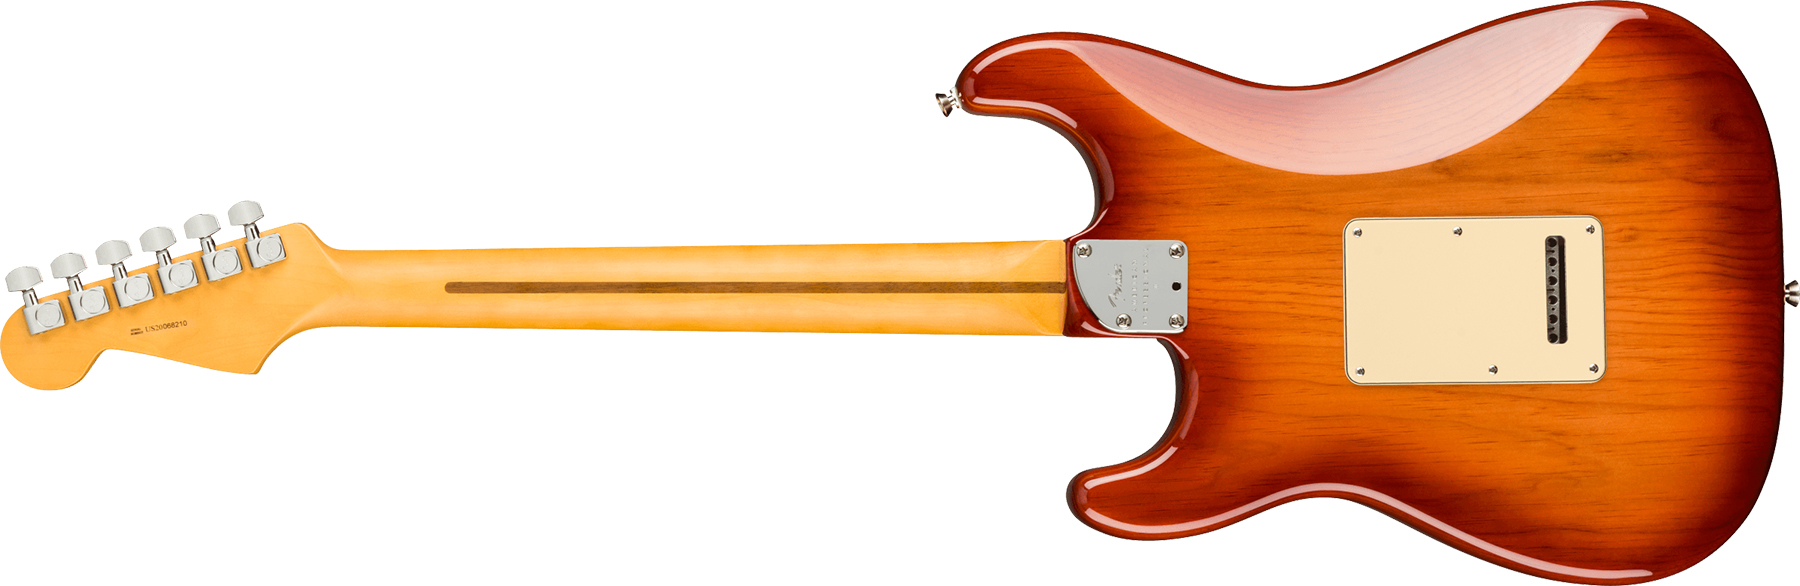 Fender Strat American Professional Ii Usa Mn - Sienna Sunburst - Guitare Électrique Forme Str - Variation 1